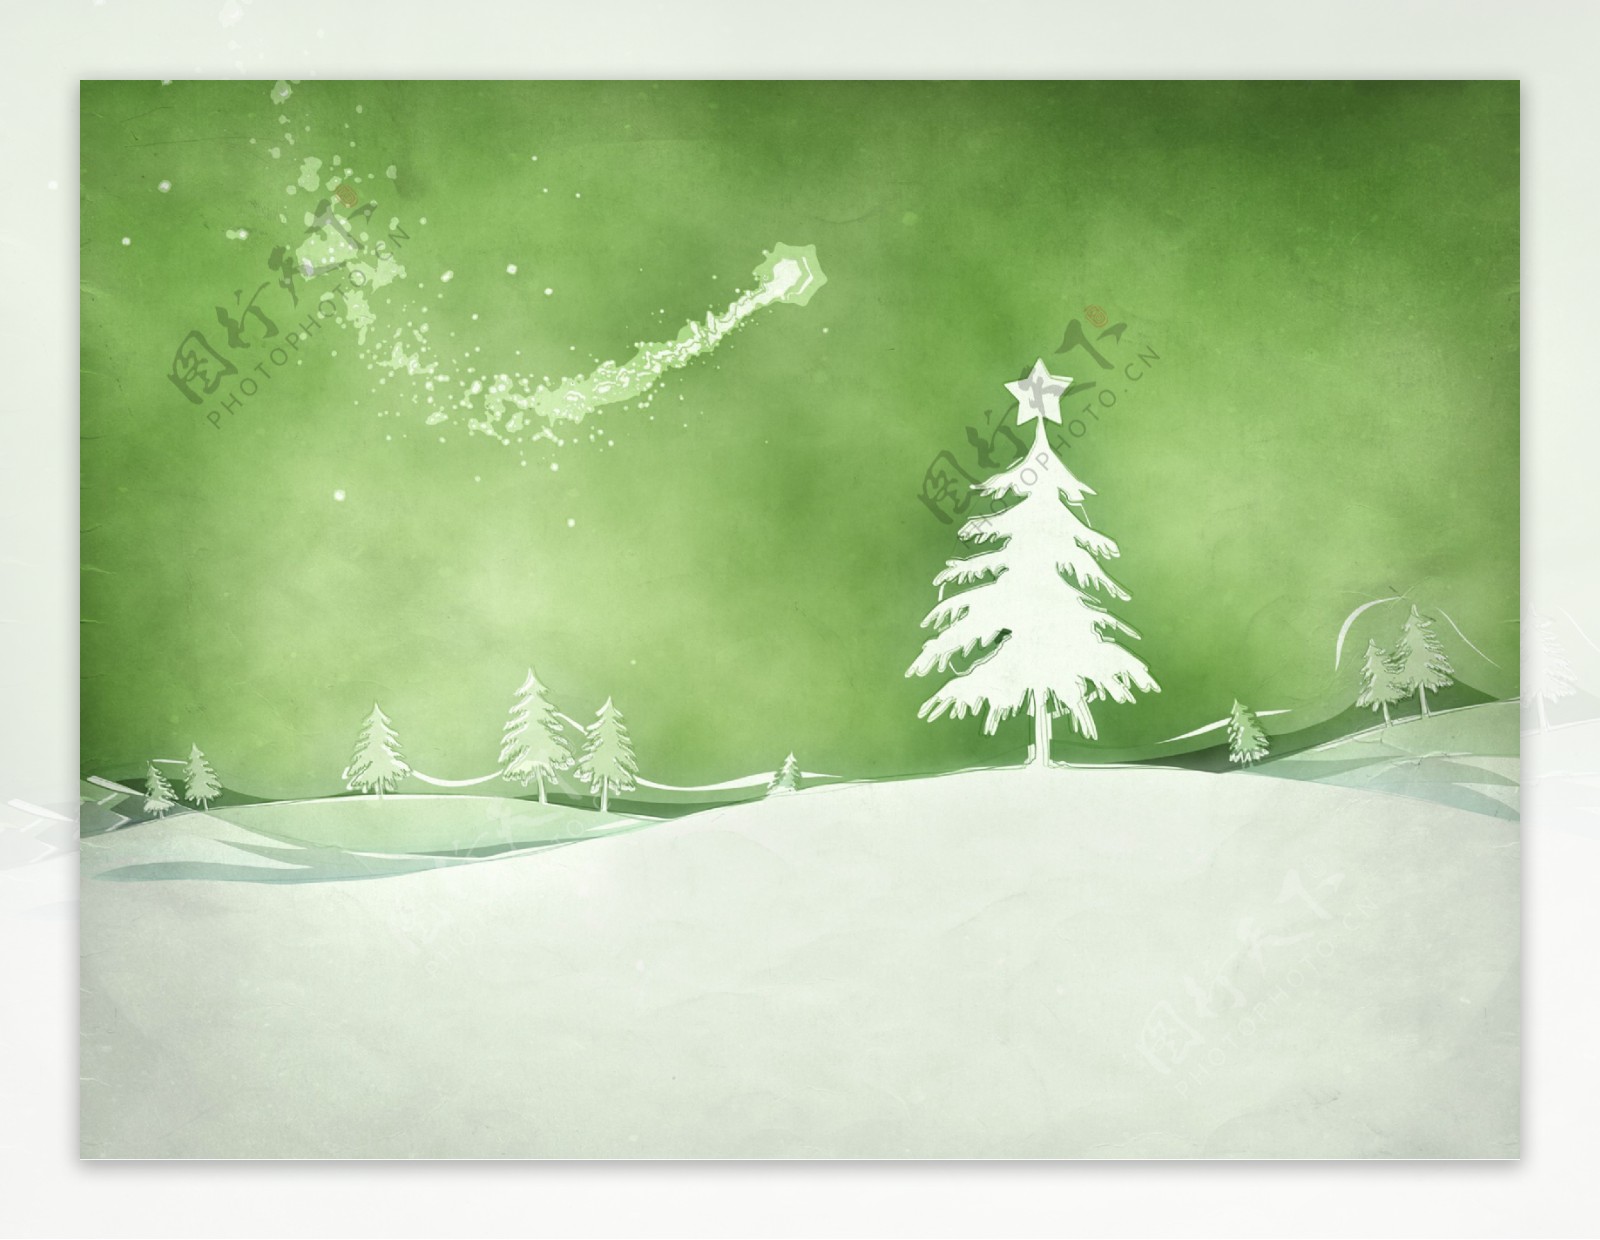 雪地里的圣诞树图片